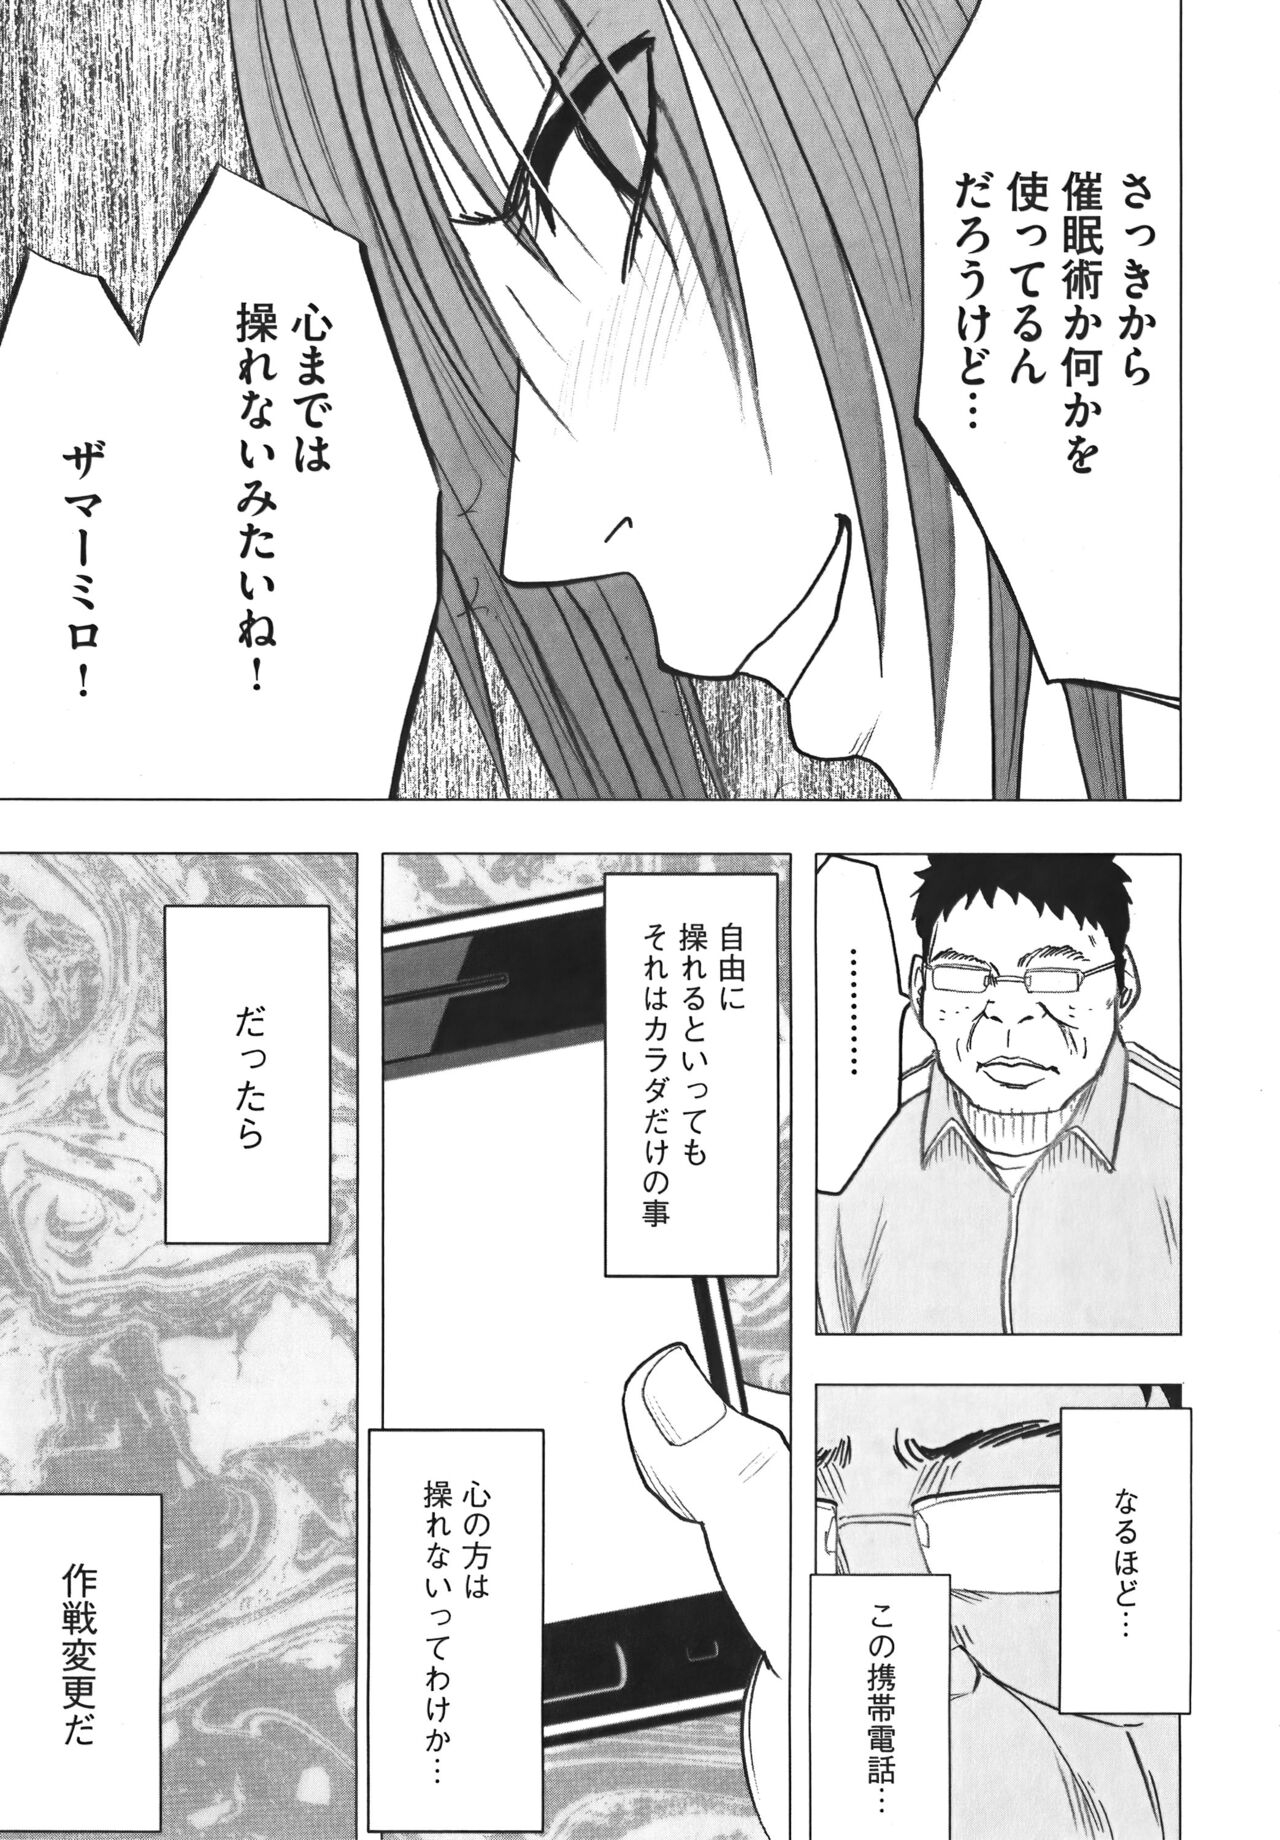 [Crimson] Idol Kyousei Sousa Vol.1 Smartphone de Meireishita Koto ga Genjitsu ni [Complete Edition] 74